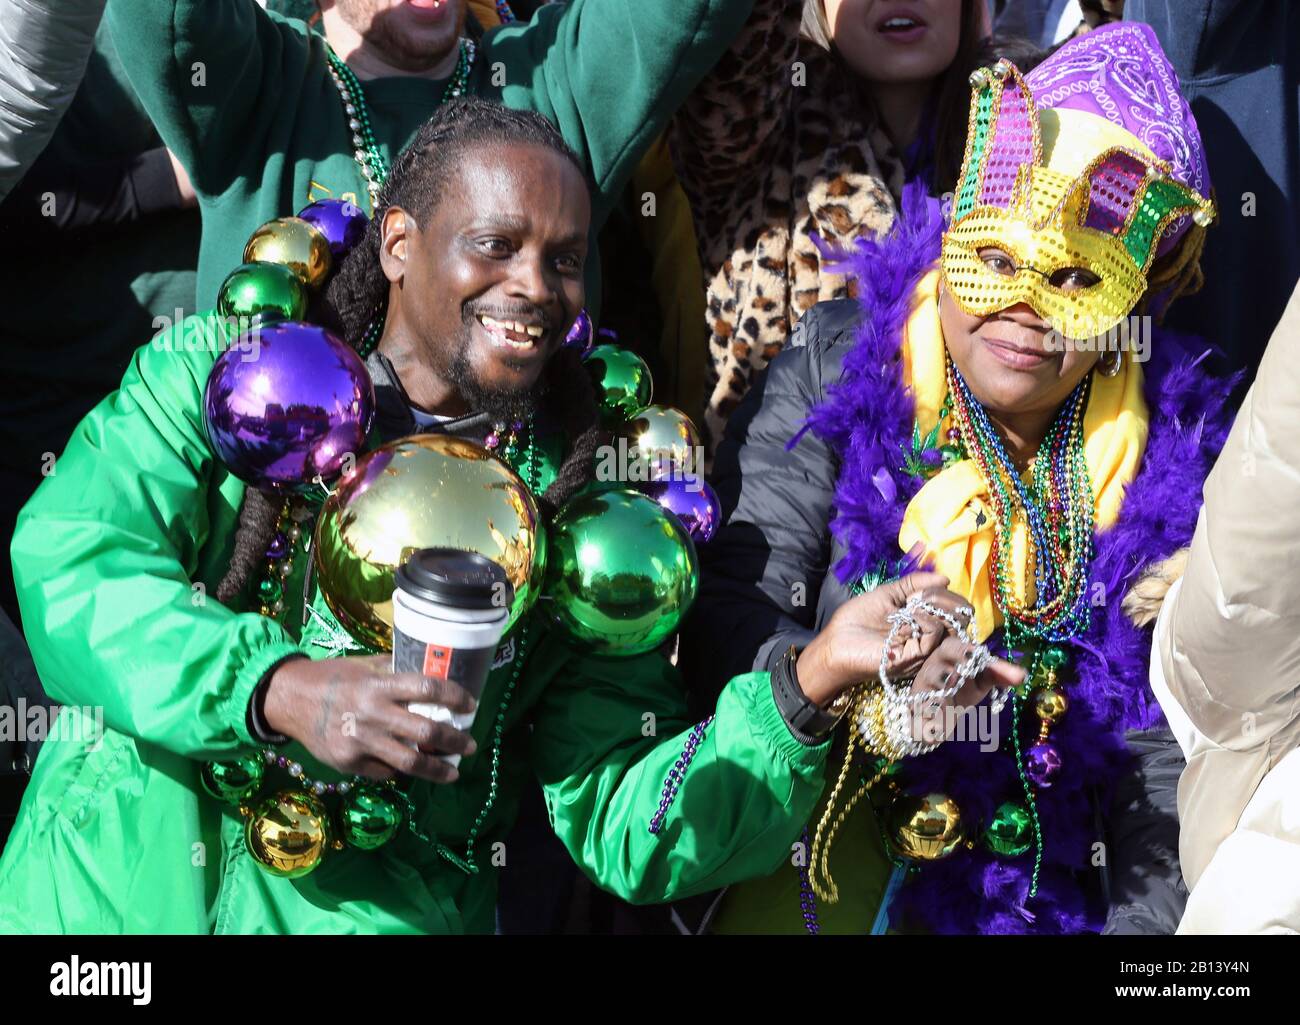 St. Louis, Estados Unidos. 22 de febrero de 2020. Los goers del desfile cogen cuentas durante el desfile de St. Louis Mardi Gras en St. Louis el sábado, 22 de febrero de 2020. Foto de Bill Greenblatt/UPI crédito: UPI/Alamy Live News Foto de stock